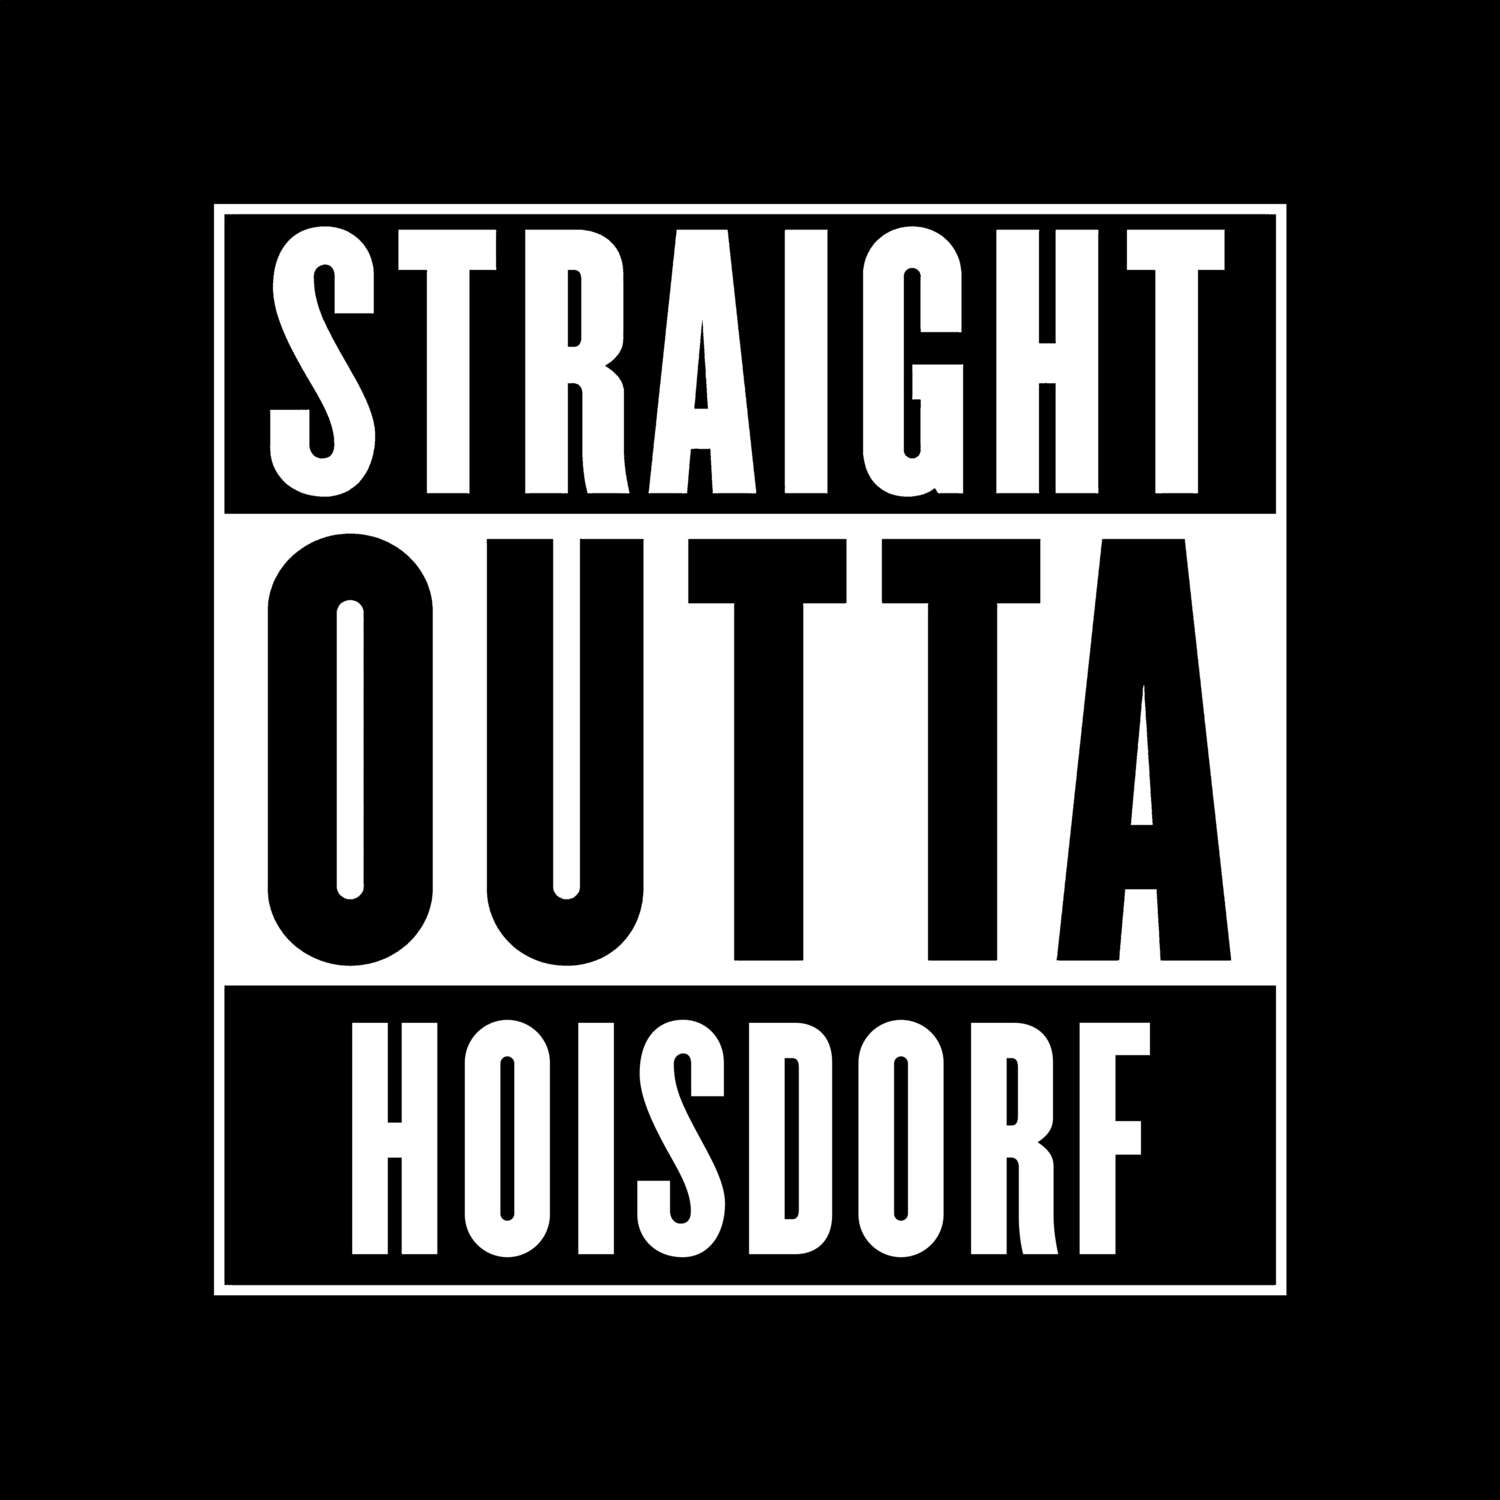 Hoisdorf T-Shirt »Straight Outta«